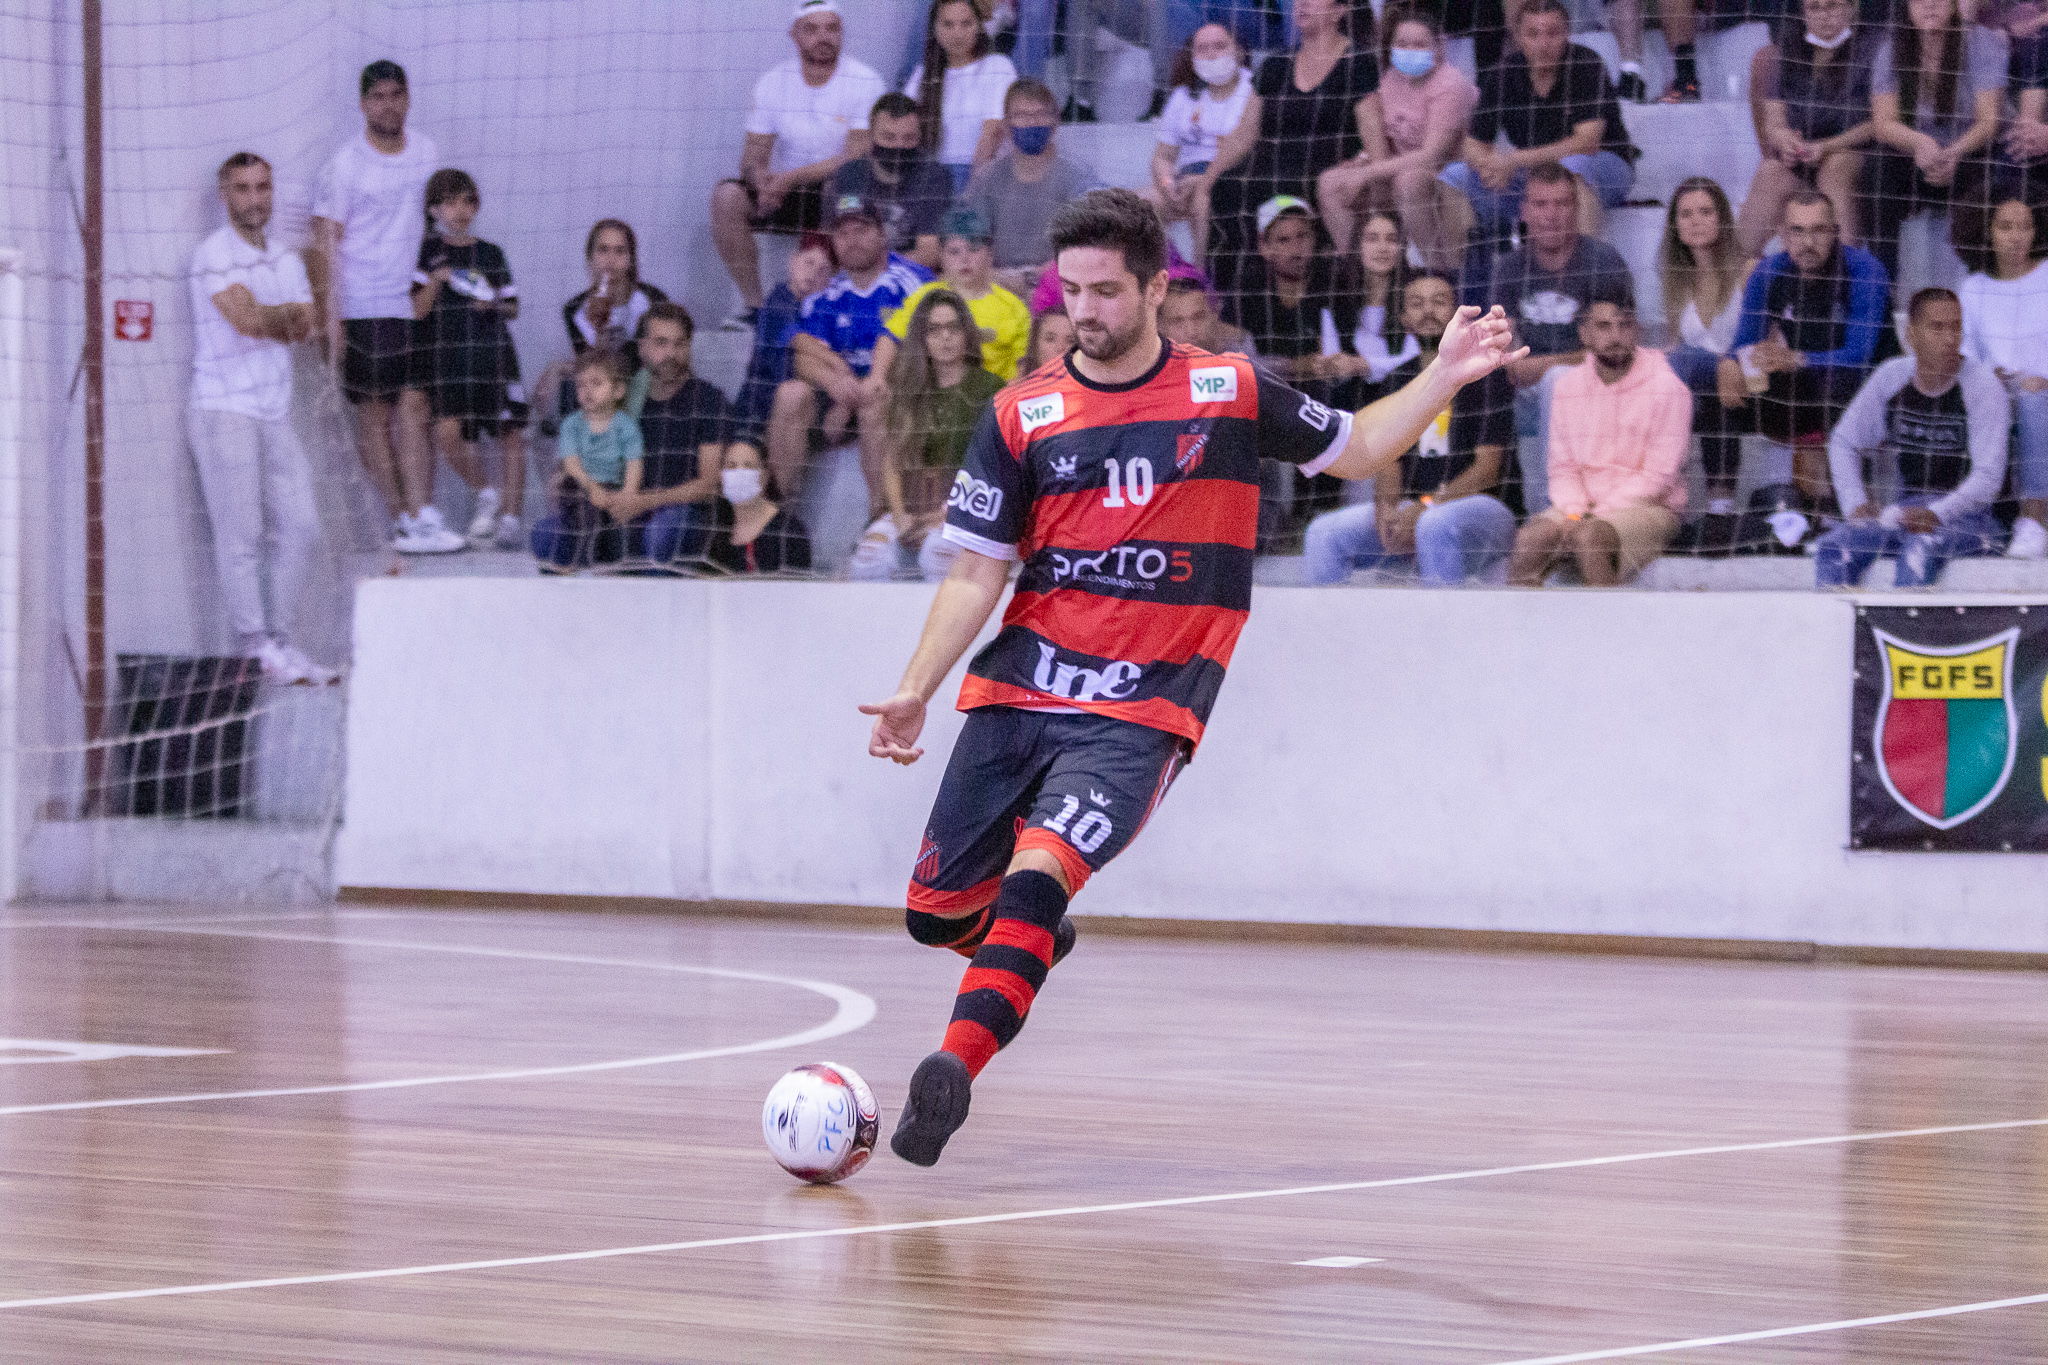 Coordenação de Comunicação Social » Futsal UFPel/Paulista